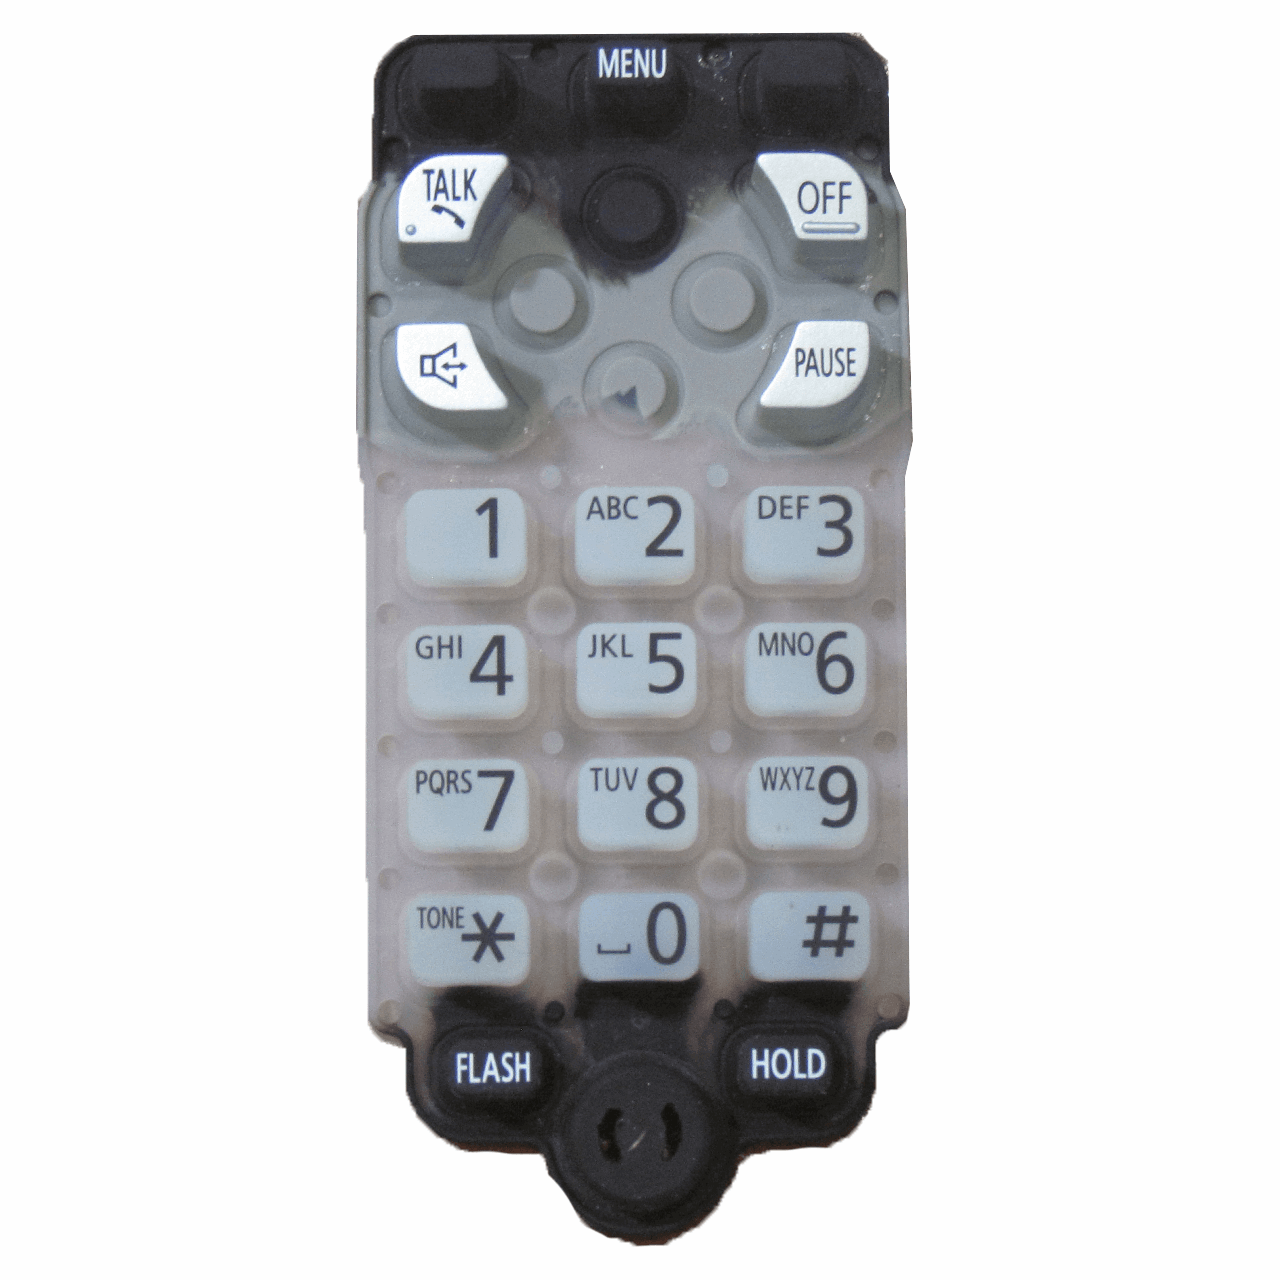 شماره گیر اس وای دی مدل 9341 مناسب تلفن پاناسونیک